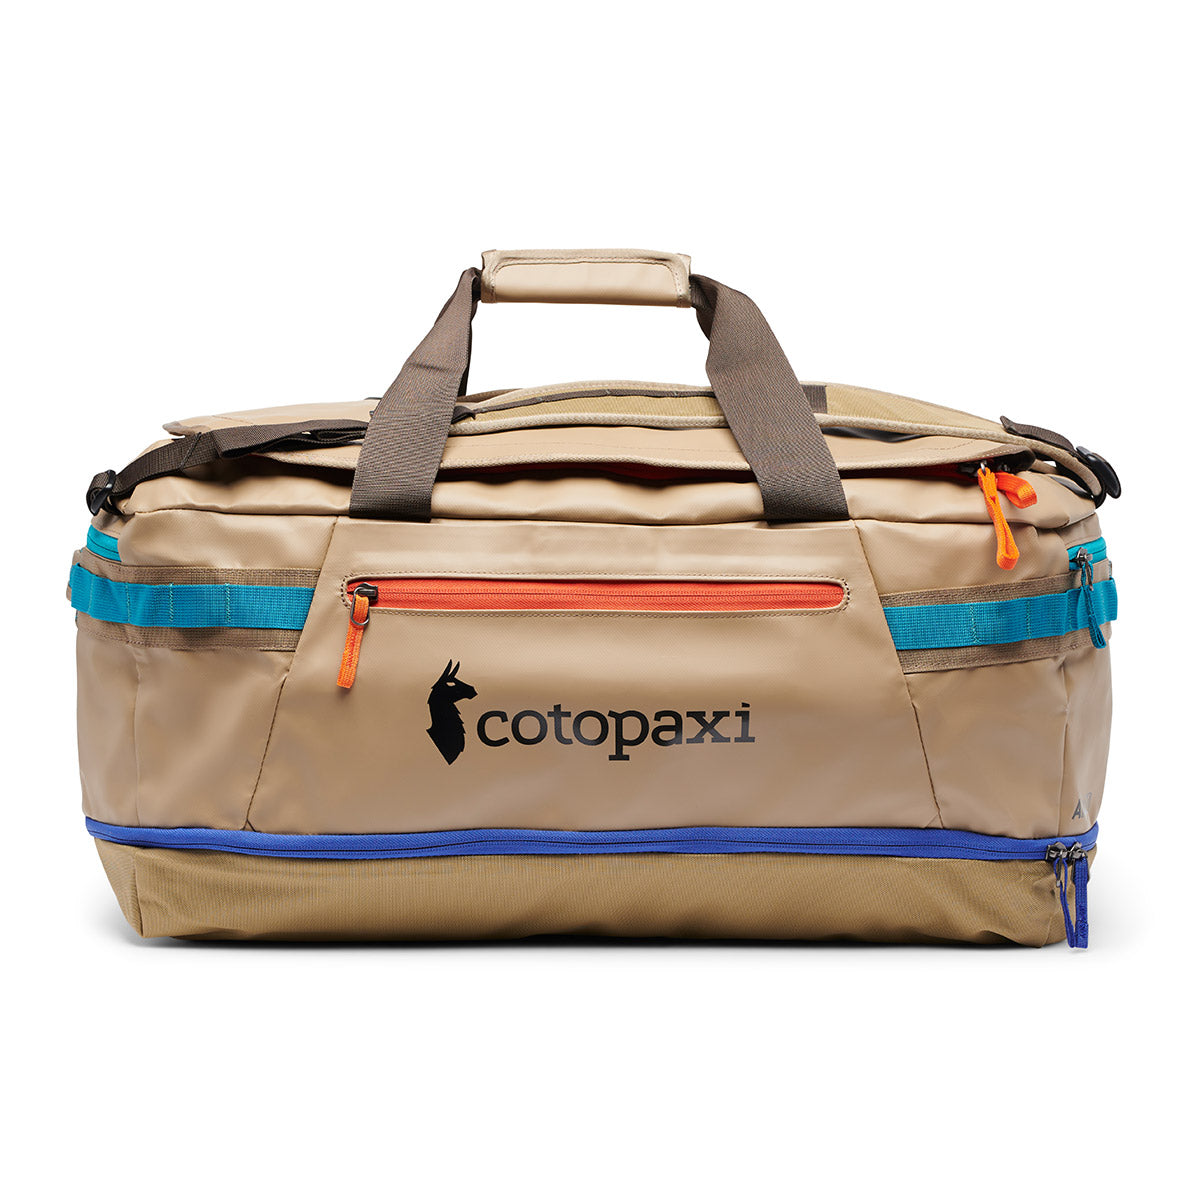 Cotopaxi Allpa 70L Duffel Bag コトパクシ アルパ 70L ダッフルバッグ